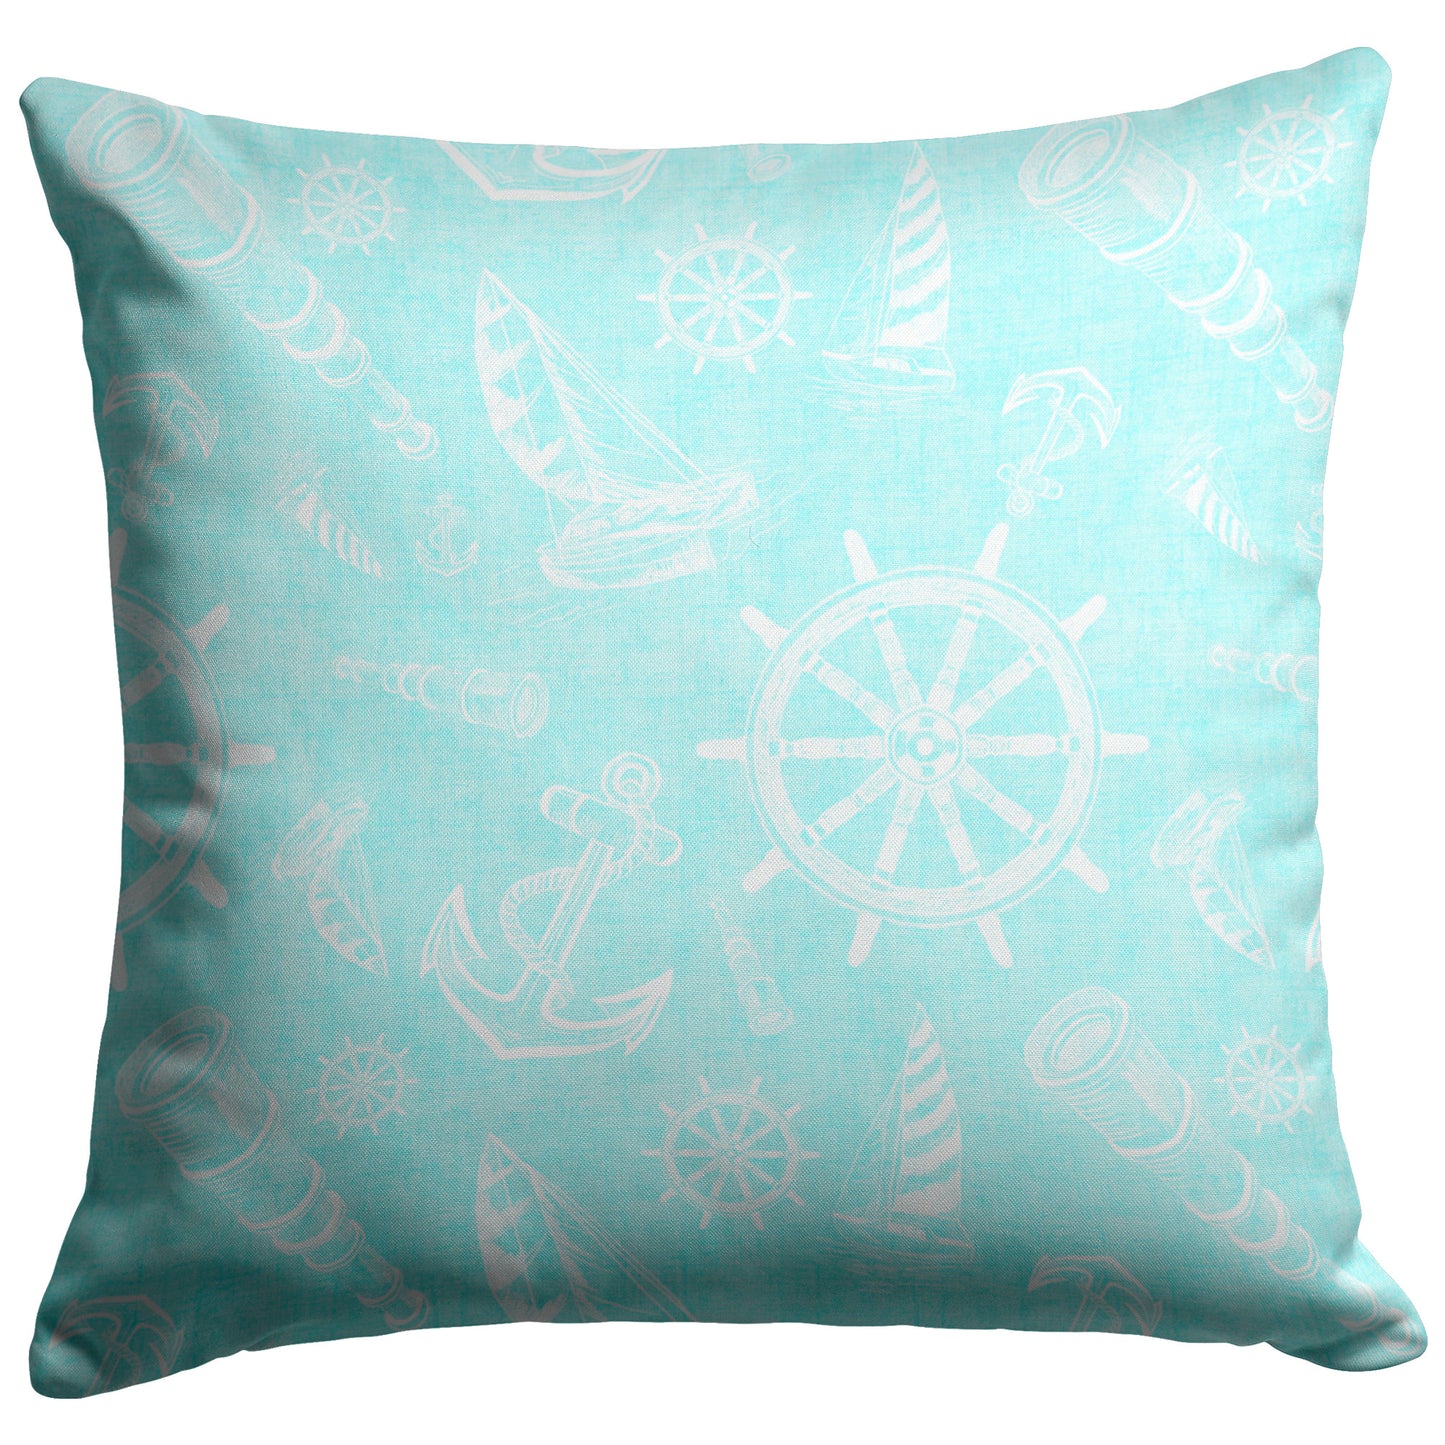 Nautical Sketches Design on Coastal Blue Linen Textured Background, Throw Pillow